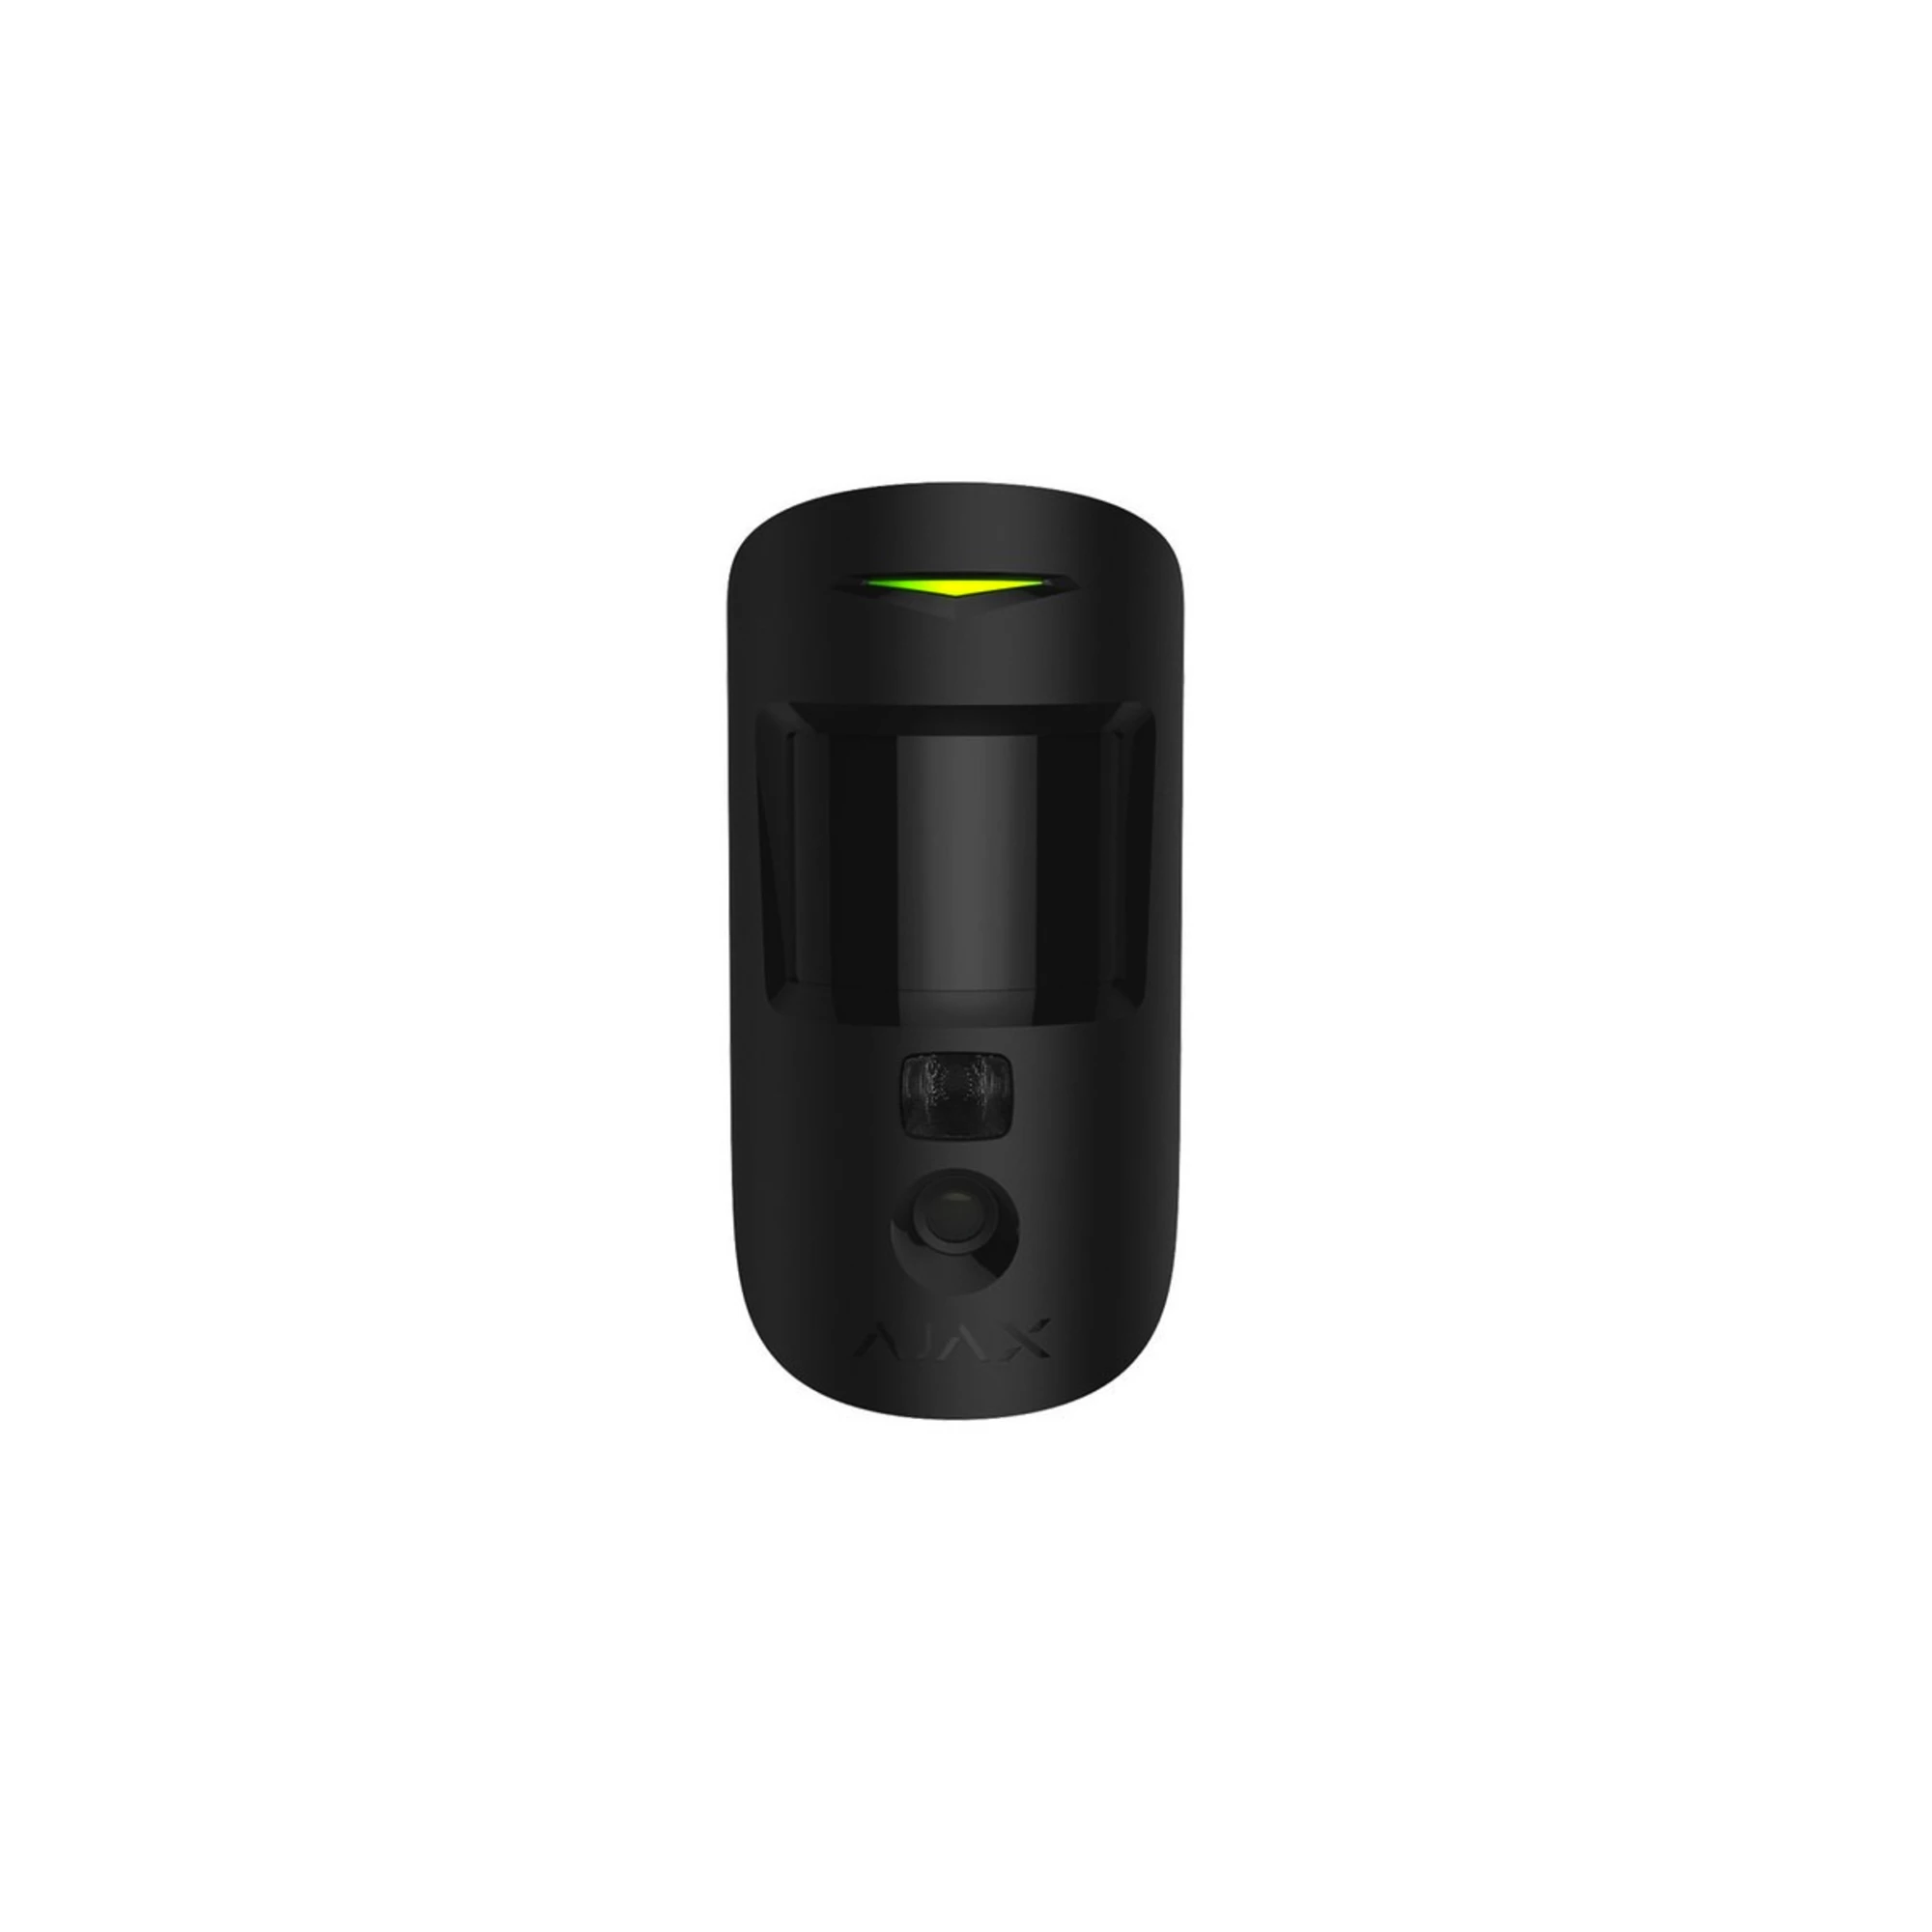 Ajax MotionCam Black - бездротовий датчик руху з фотокамерою для верифікації тривог